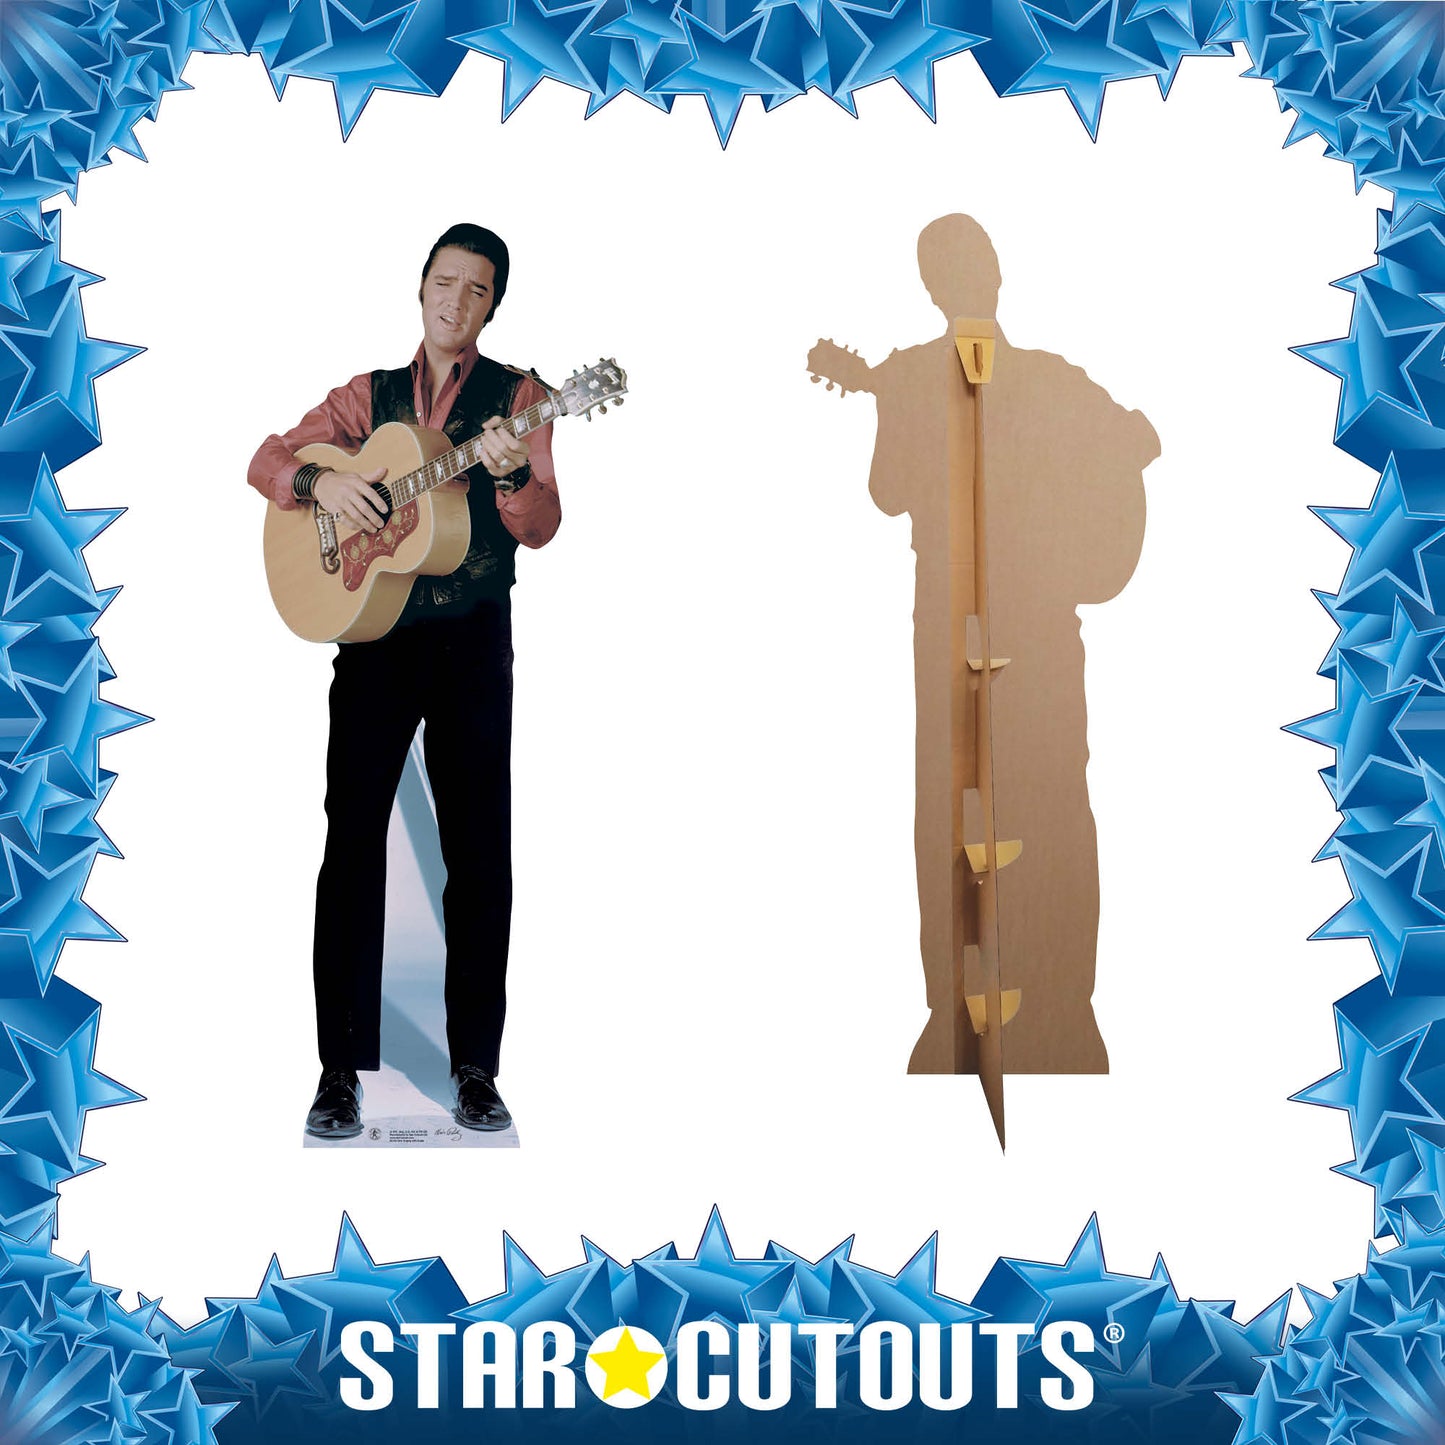 Elvis Singing with Guitar Cardboard Cutout MyCardboardCutout